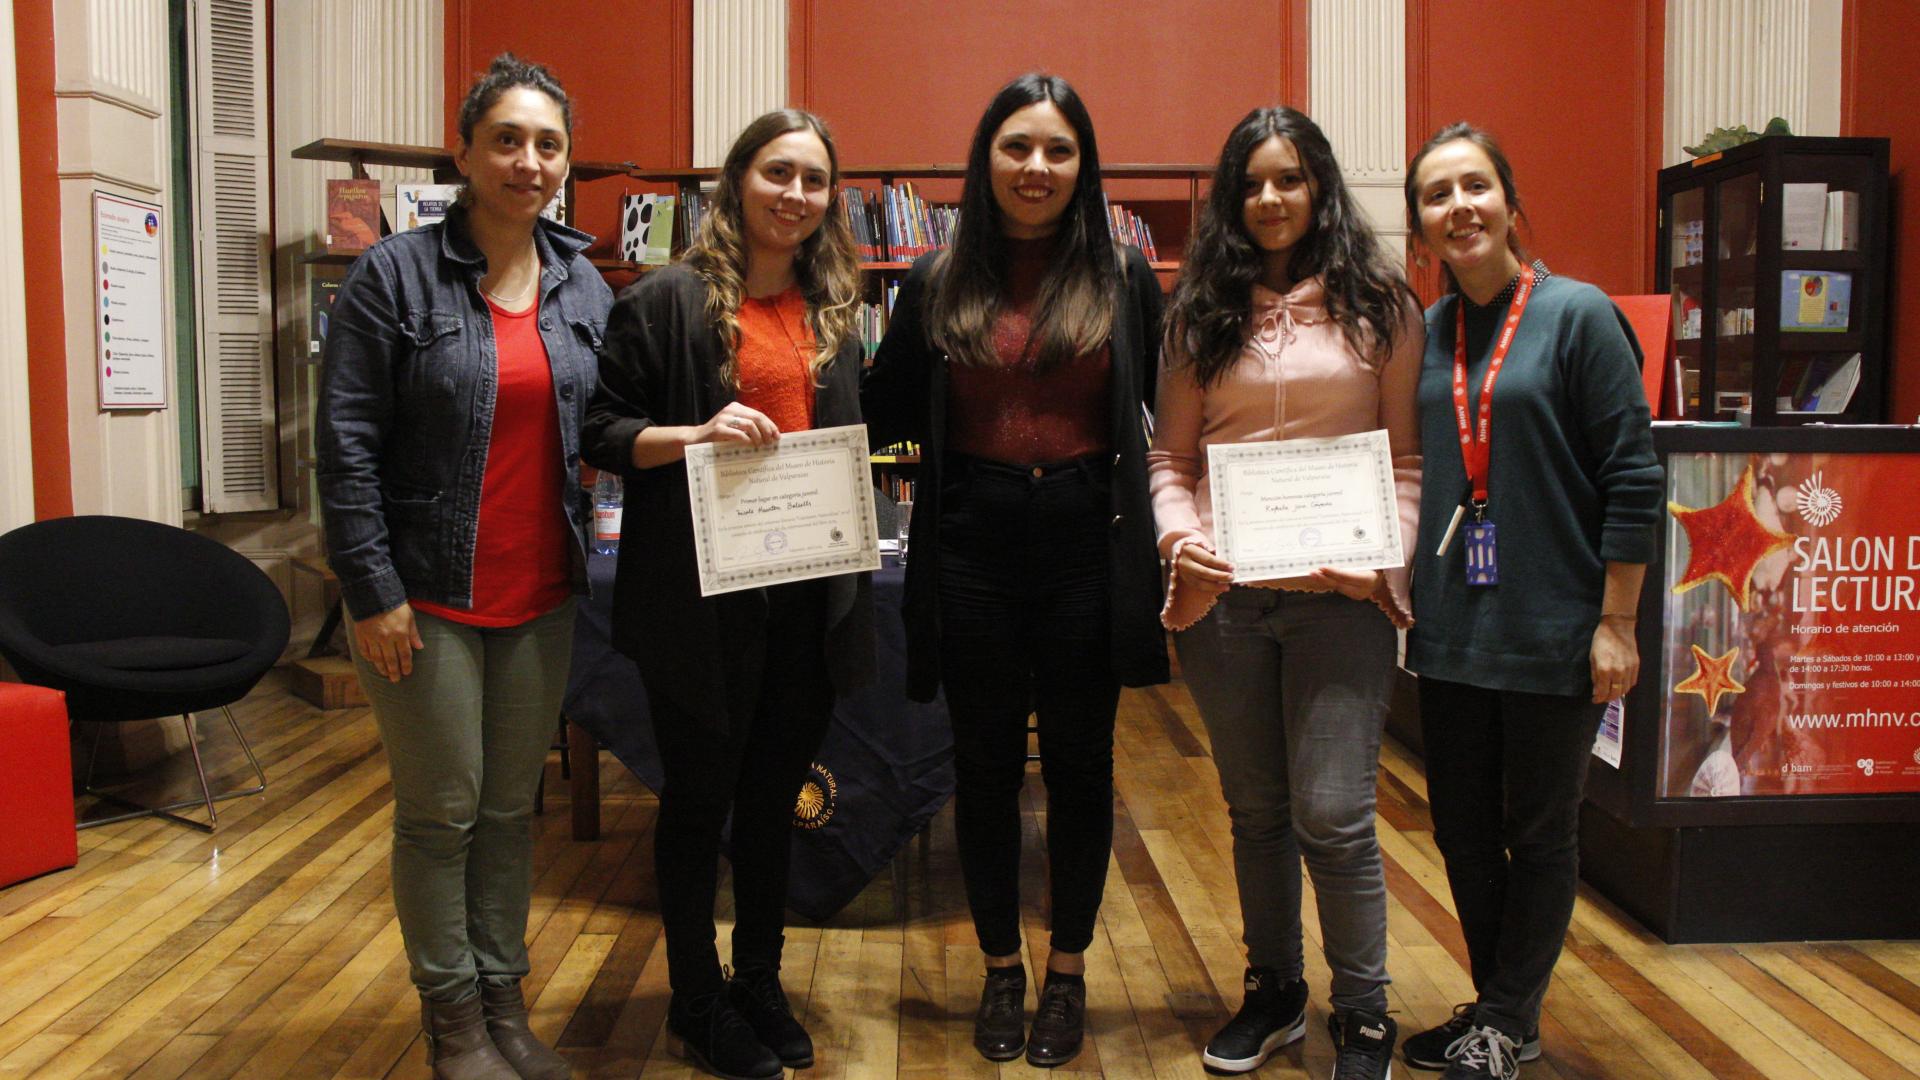 La ganadora de la categoria juvenil, Nicole Hourton Balsells, junto a Rafaela Jara Céspedes, mención honrosa, recibiendo sus merecidos reconocimiento en la sala de lectura del MHNV